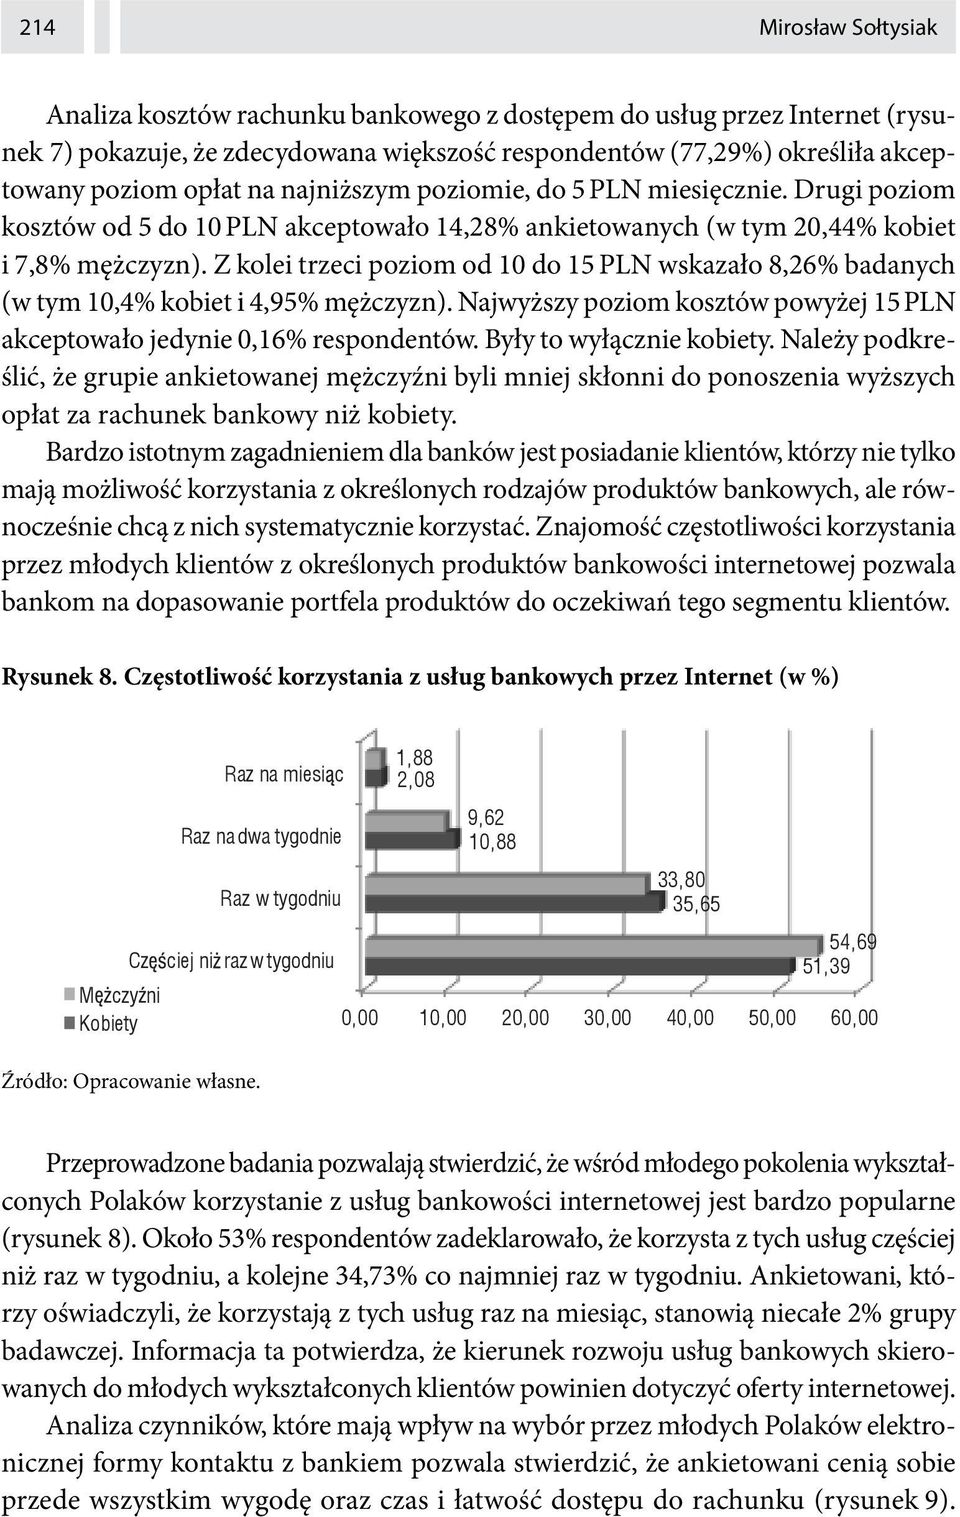 Z kolei trzeci poziom od 10 do 15 PLN wskazało 8,26% badanych (w tym 10,4% kobiet i 4,95% mężczyzn). Najwyższy poziom kosztów powyżej 15 PLN akceptowało jedynie 0,16% respondentów.